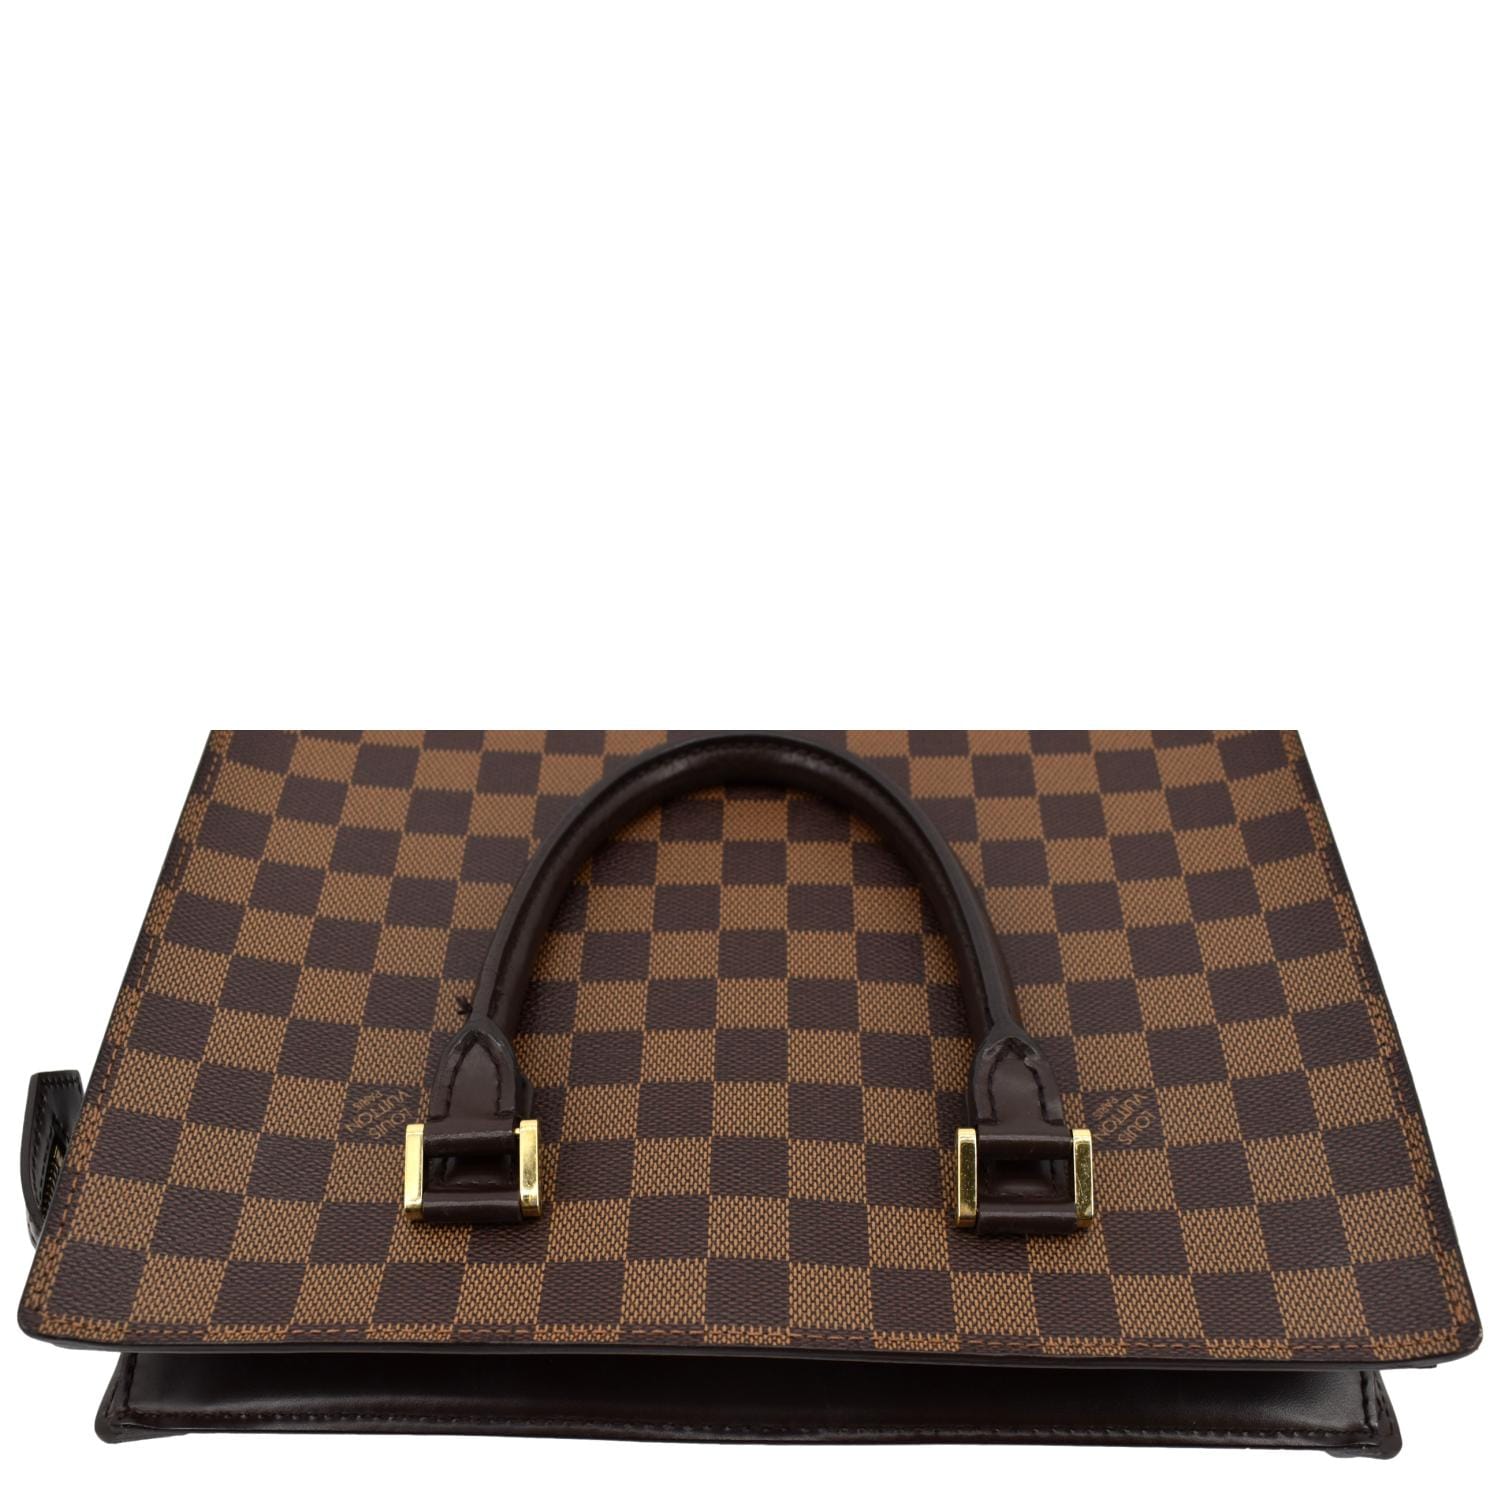 Sac Plat, Used & Preloved Louis Vuitton Tote Bag, LXR USA, Brown